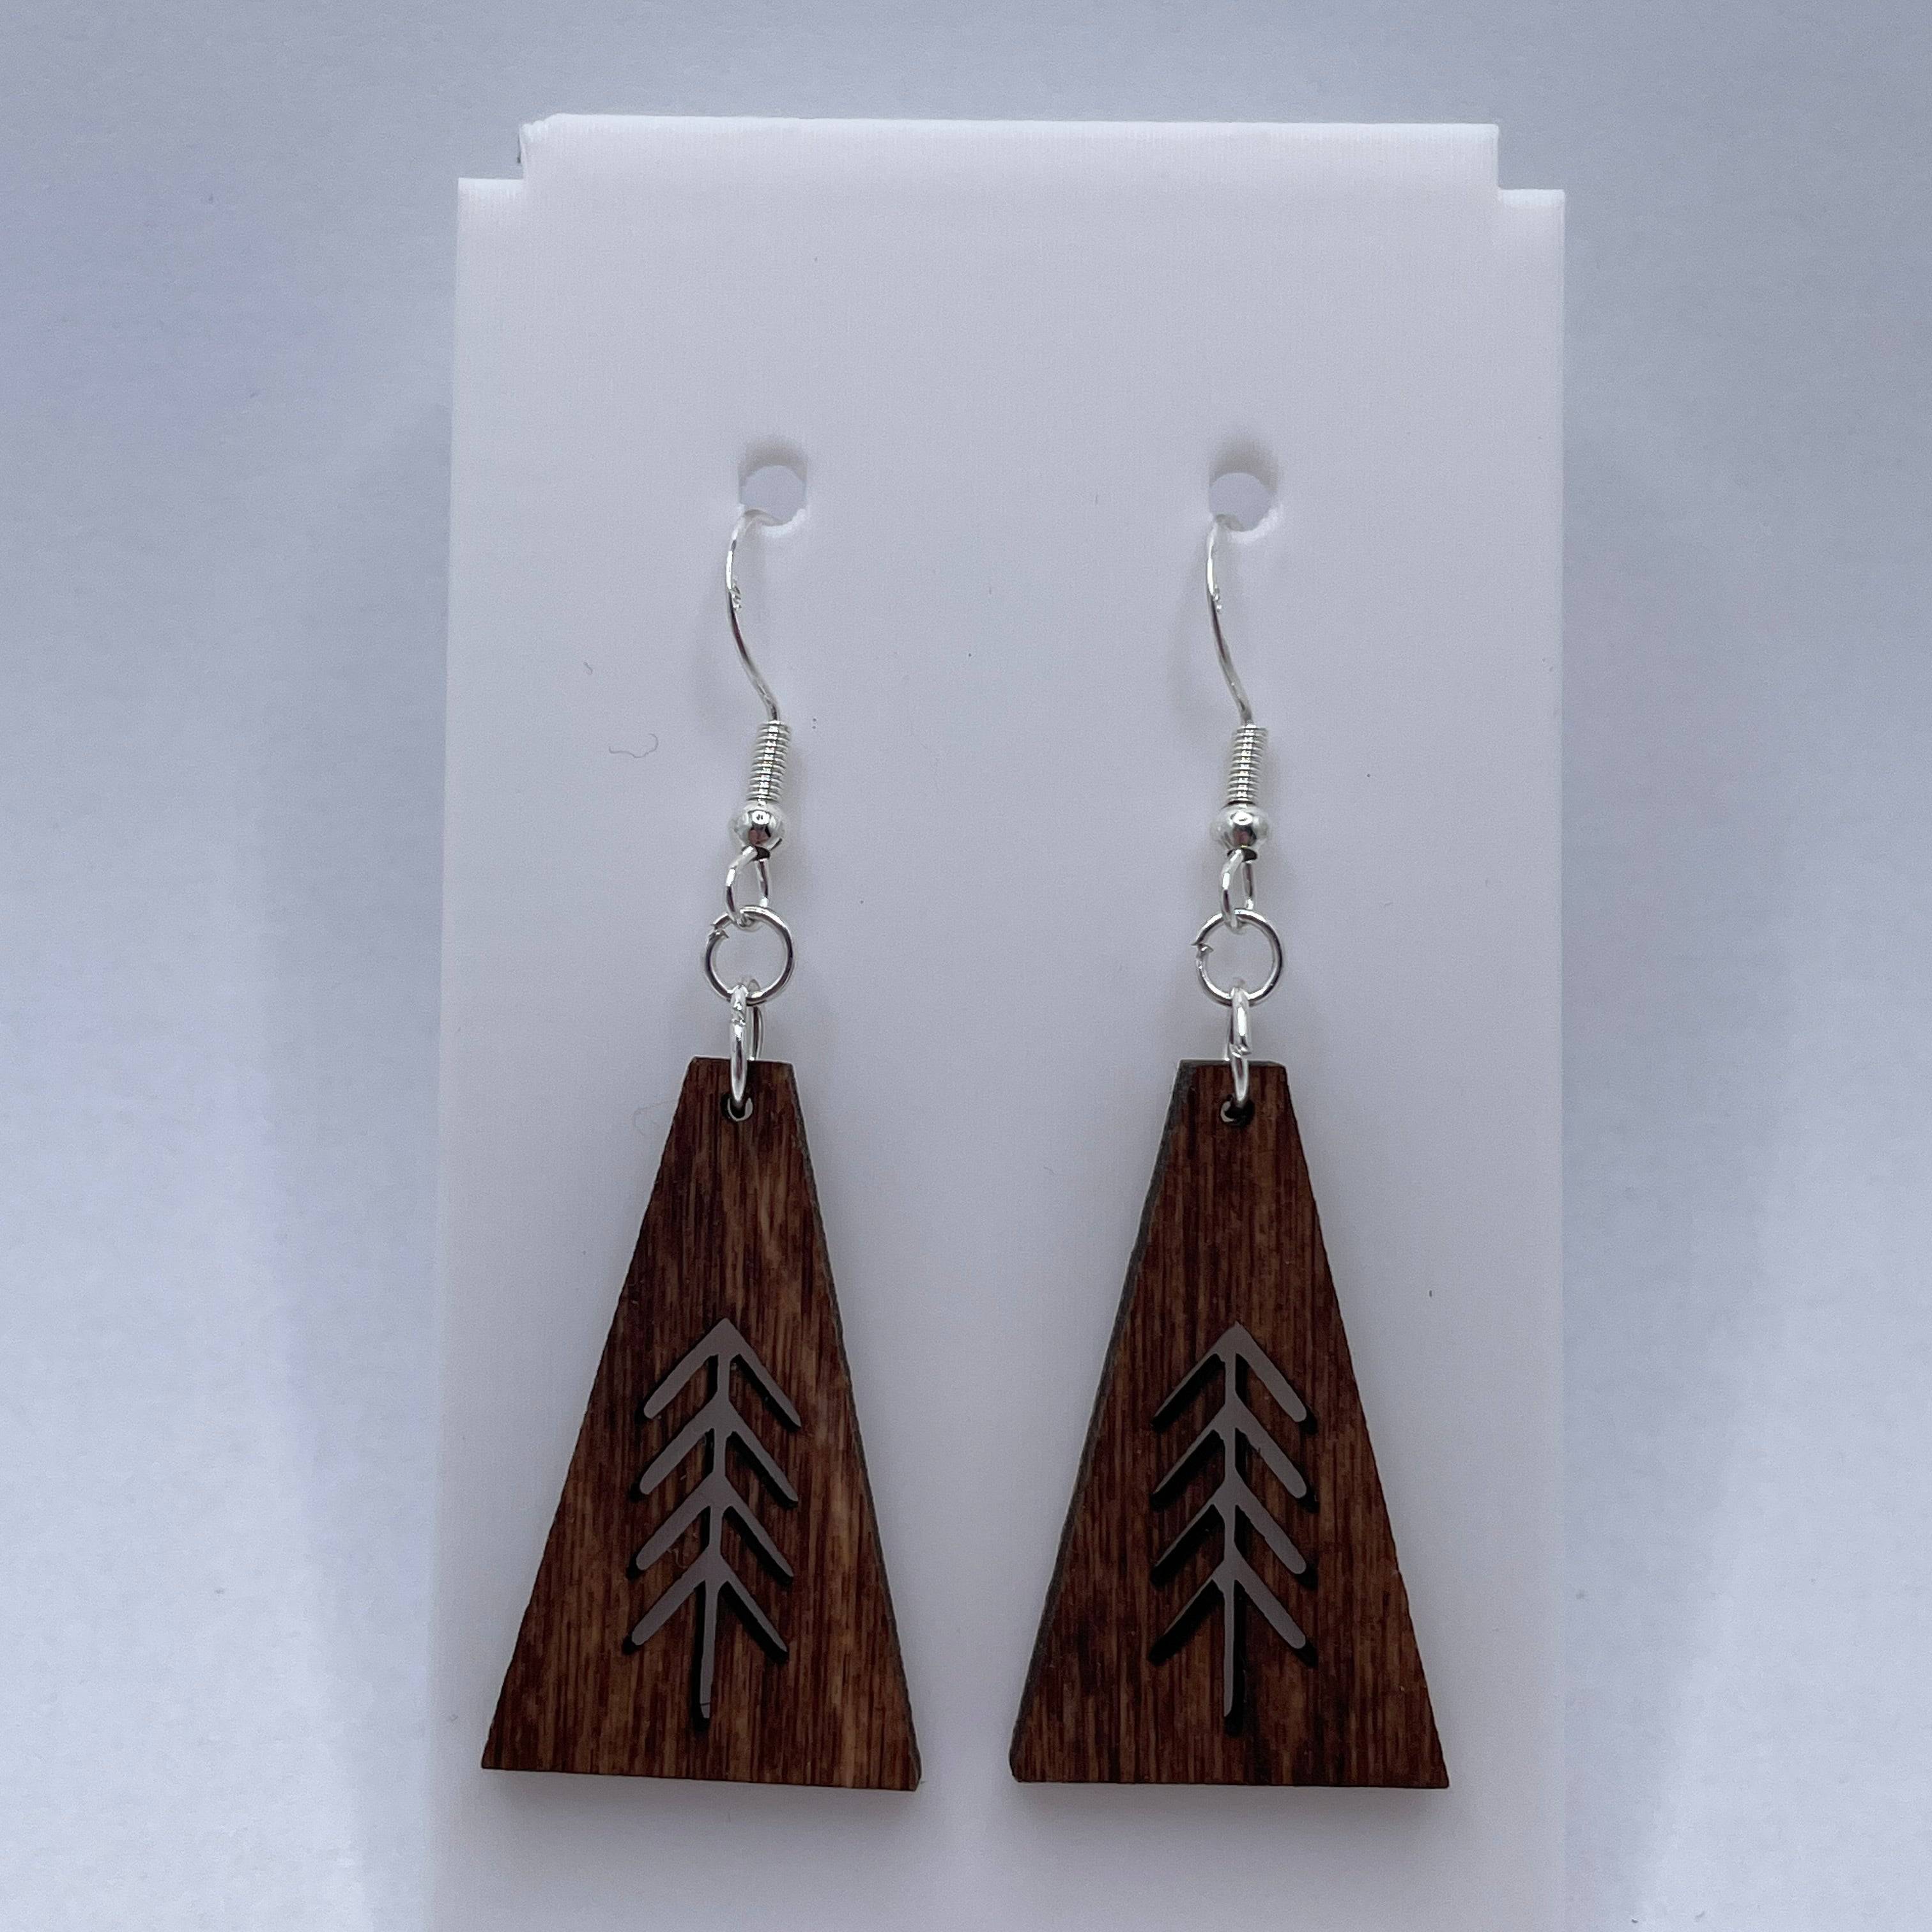 Evergreen Tree 3 Wooden Dangle Earrings